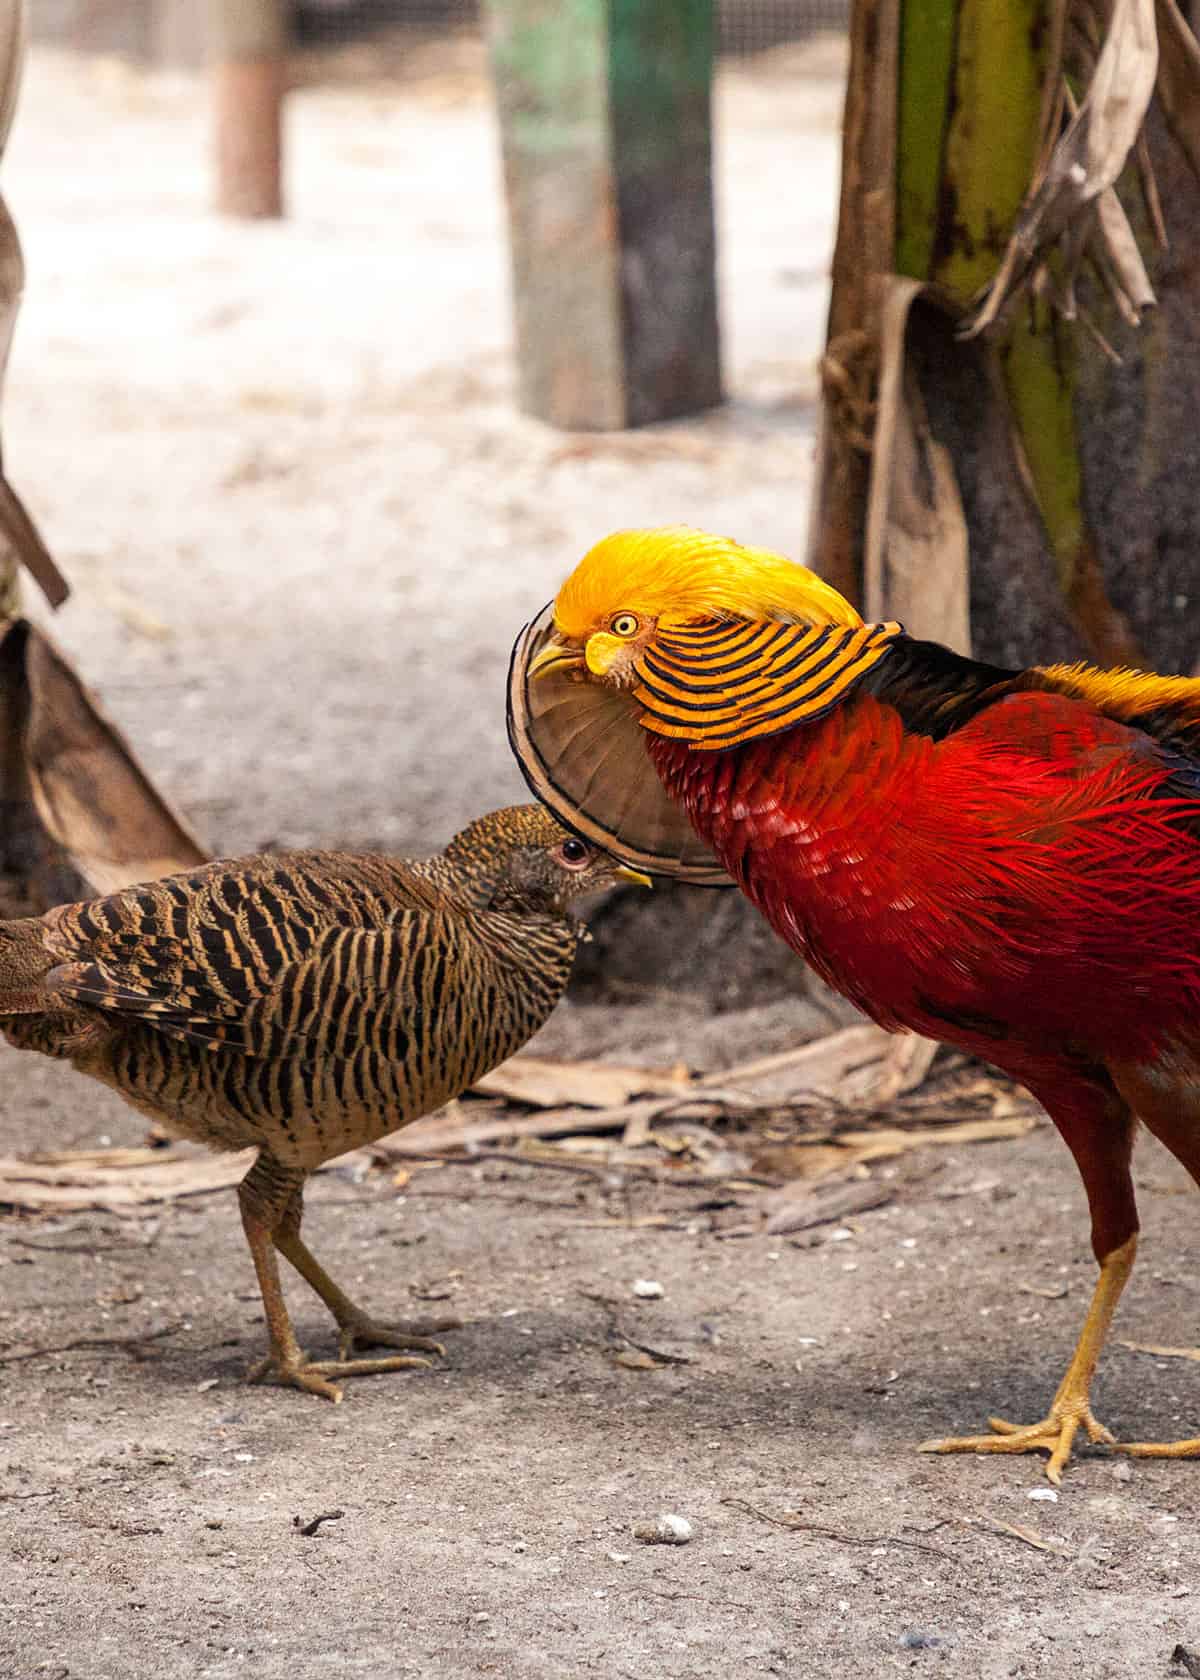 Do golden pheasants mate for life?